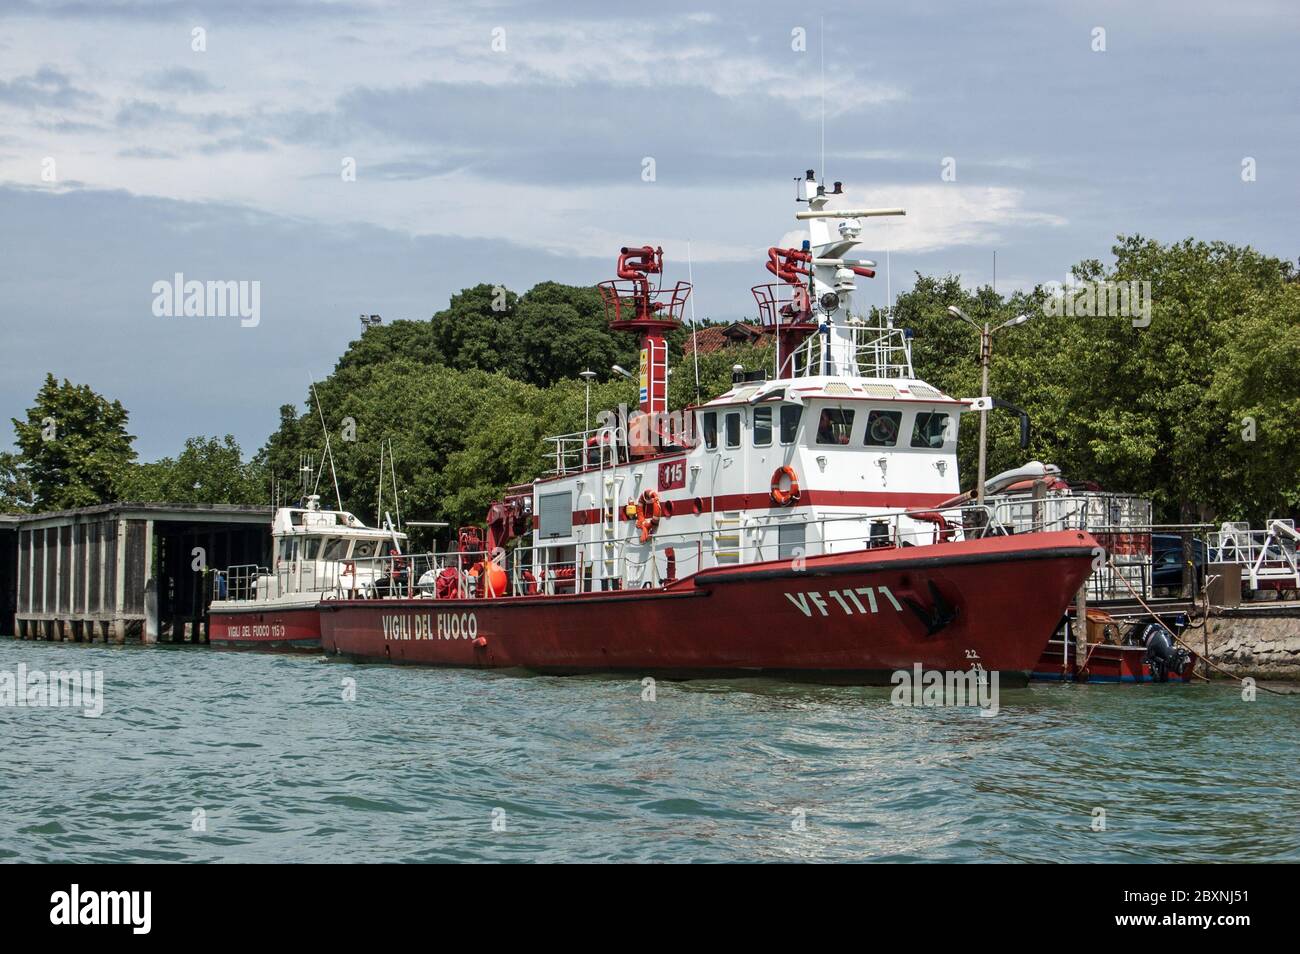 Venedig, Italien - 9. Juni 2011: Ein Feuerwehrschiff der venezianischen Feuerwehr, das an einem Kanal in der Stadt festgemacht wurde. Stockfoto